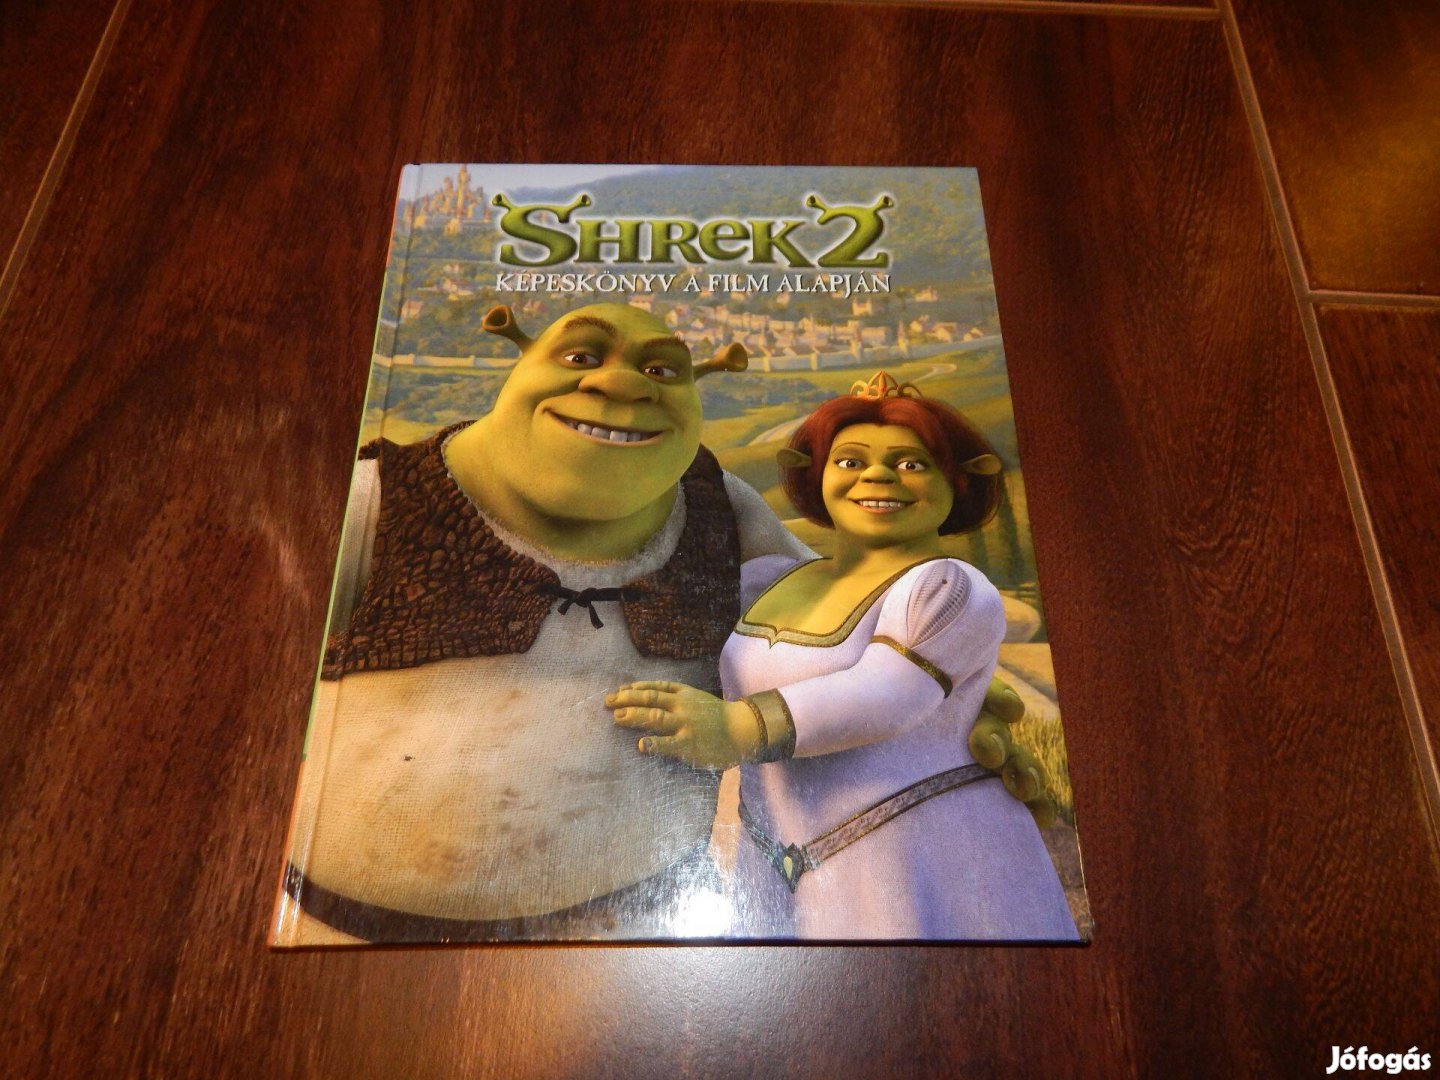 Shrek 2. - Képeskönyv a film alapján